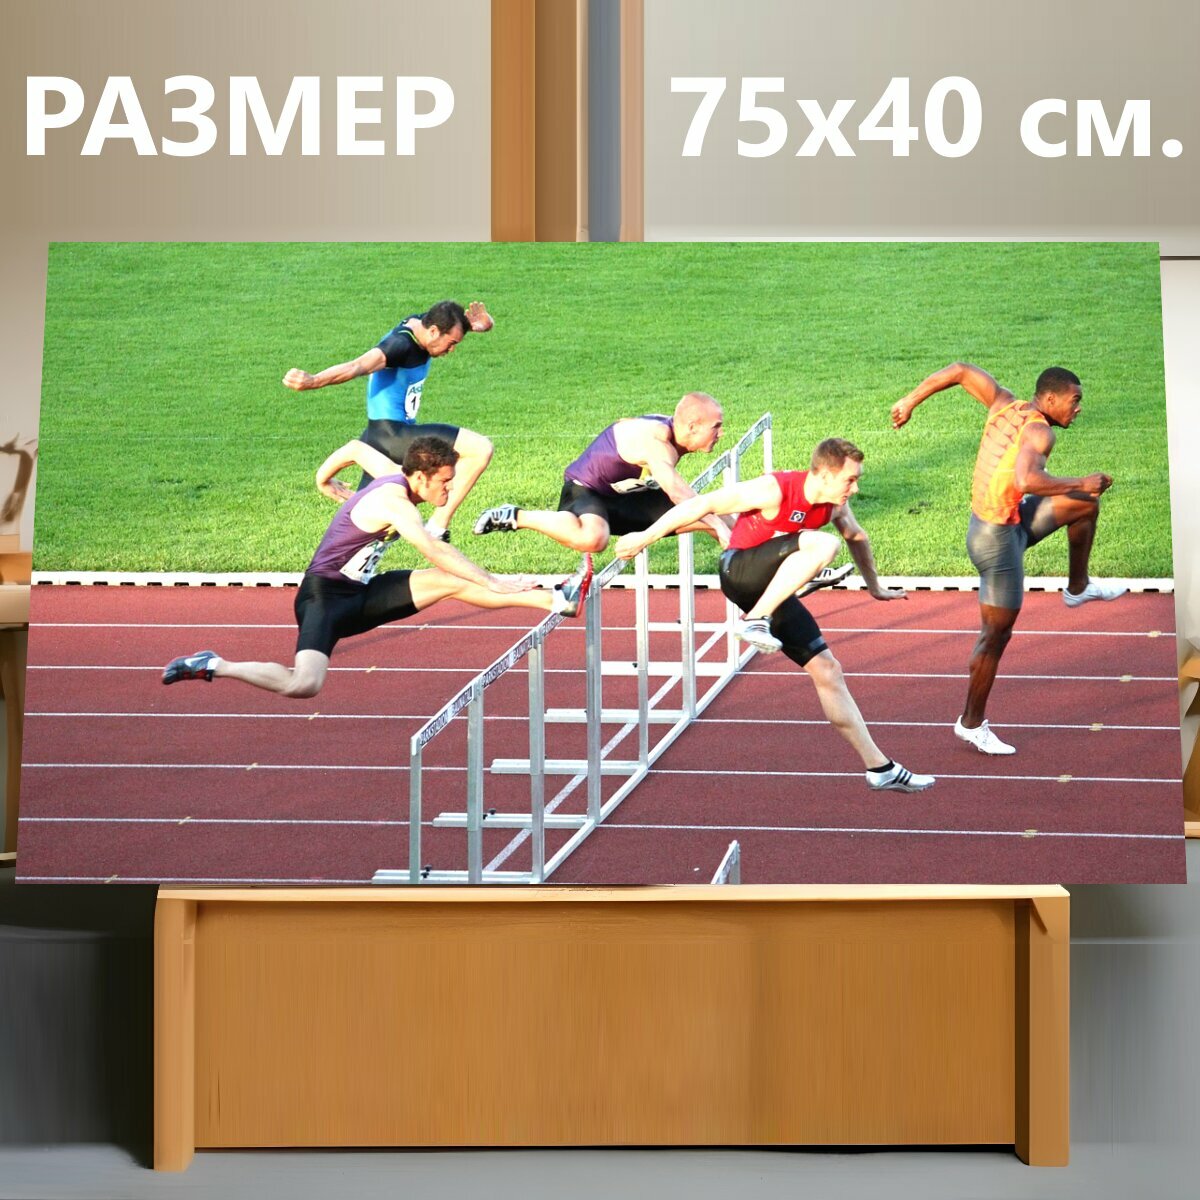 Картина на холсте "Виды спорта, лёгкая атлетика, спринт с препятствиями" на подрамнике 75х40 см. для интерьера